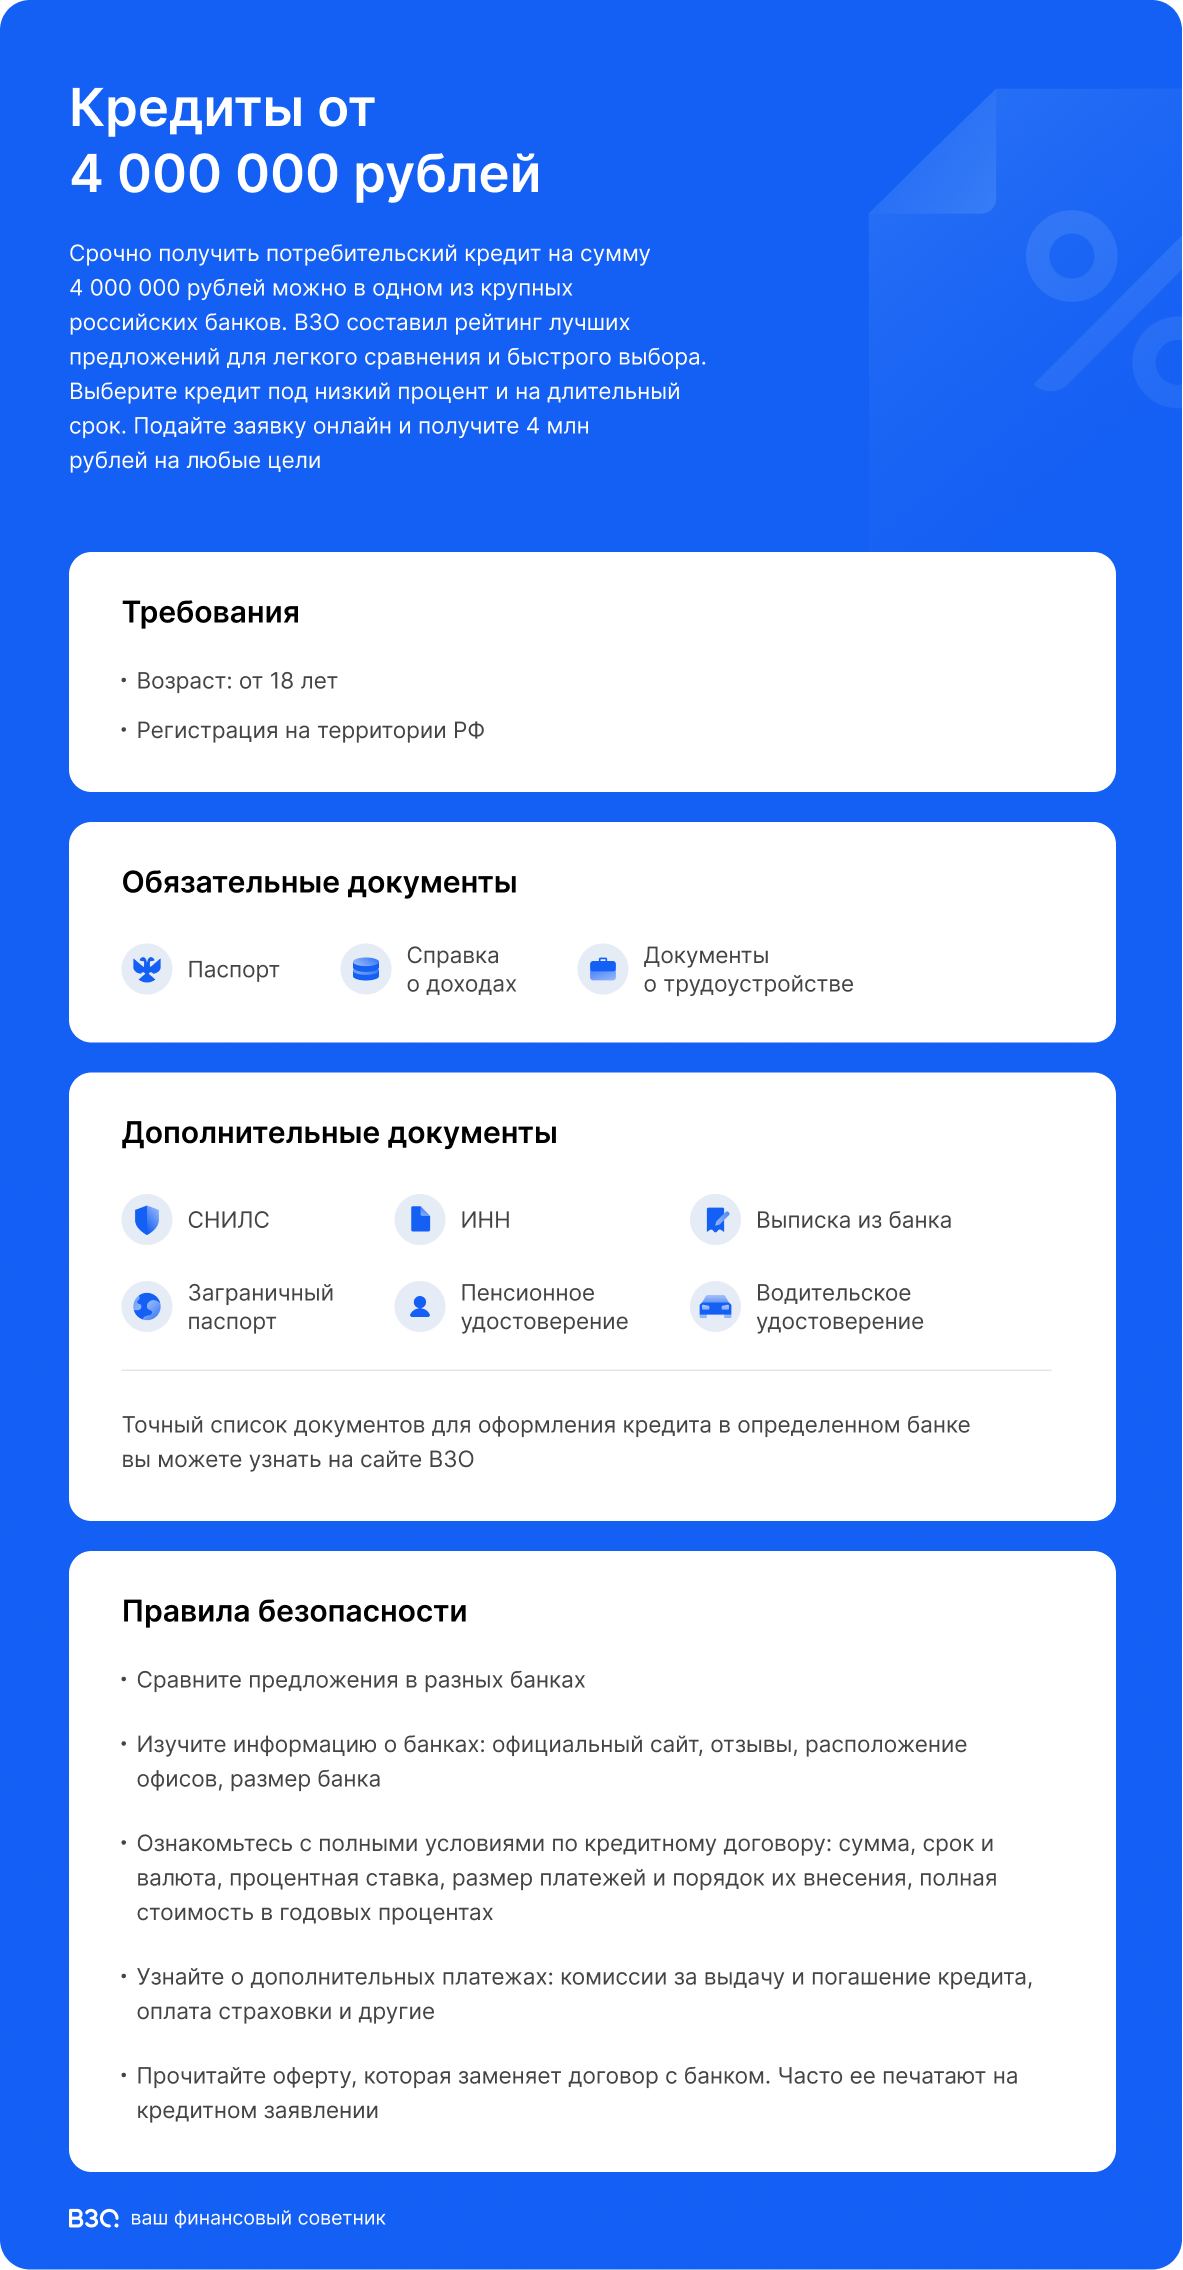 Кредиты от 4 000 000 рублей по паспорту онлайн